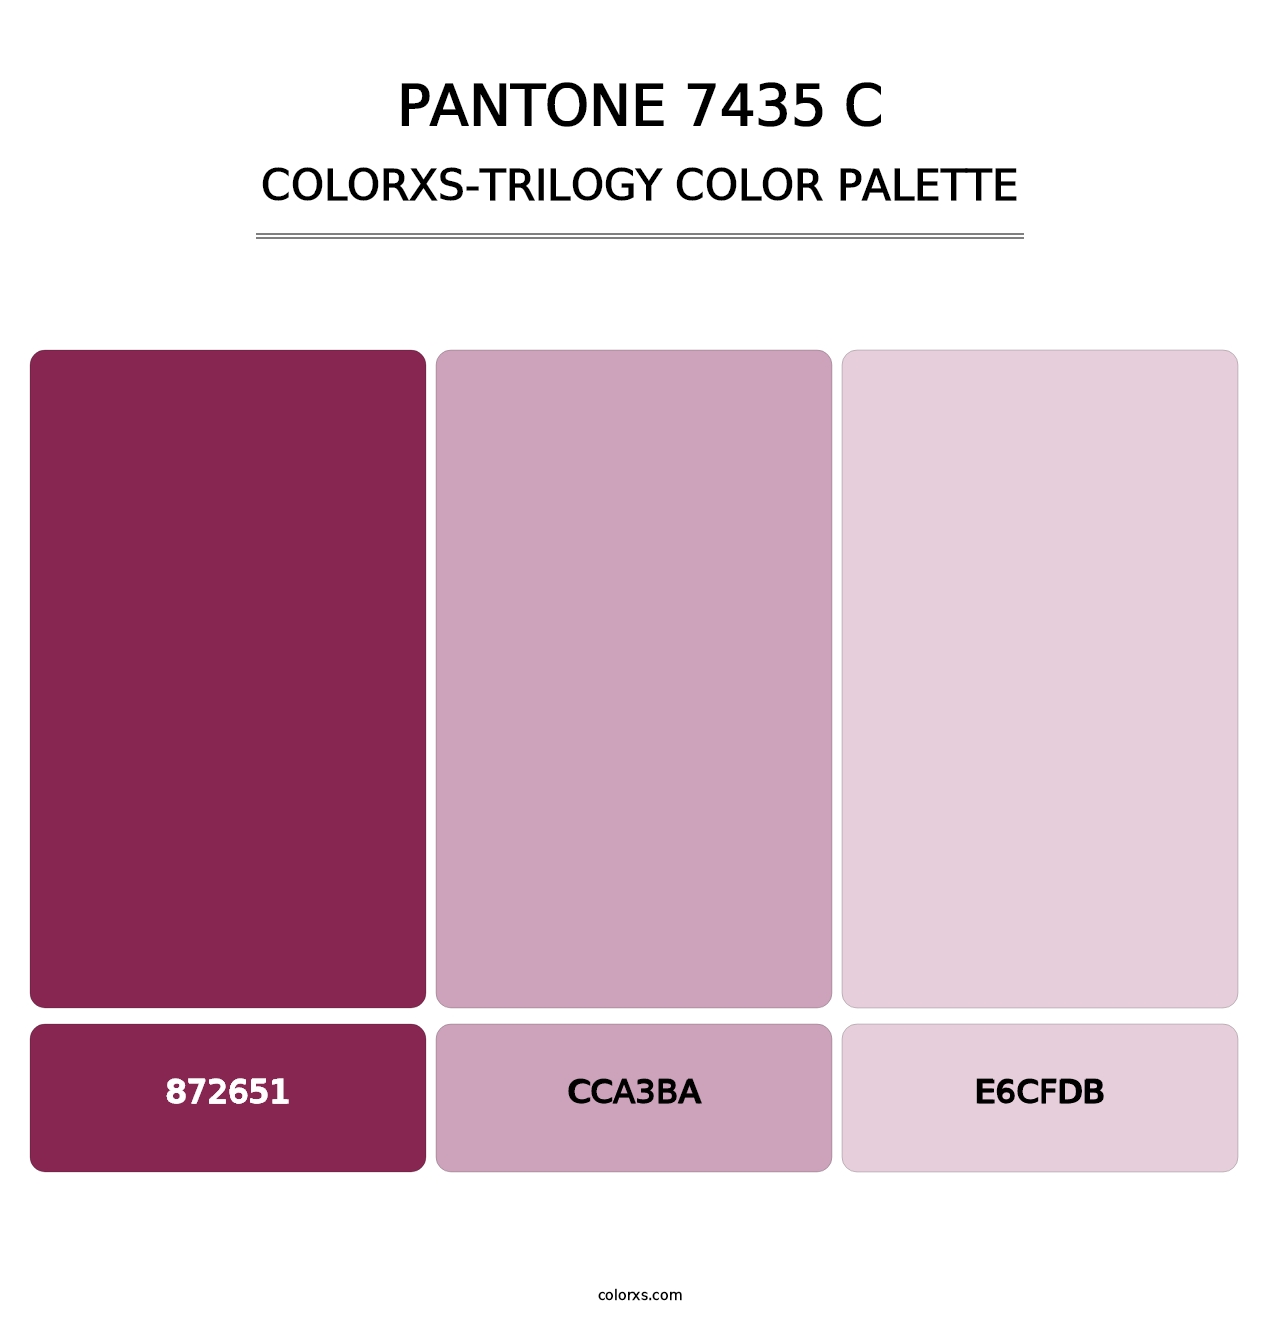 PANTONE 7435 C - Colorxs Trilogy Palette